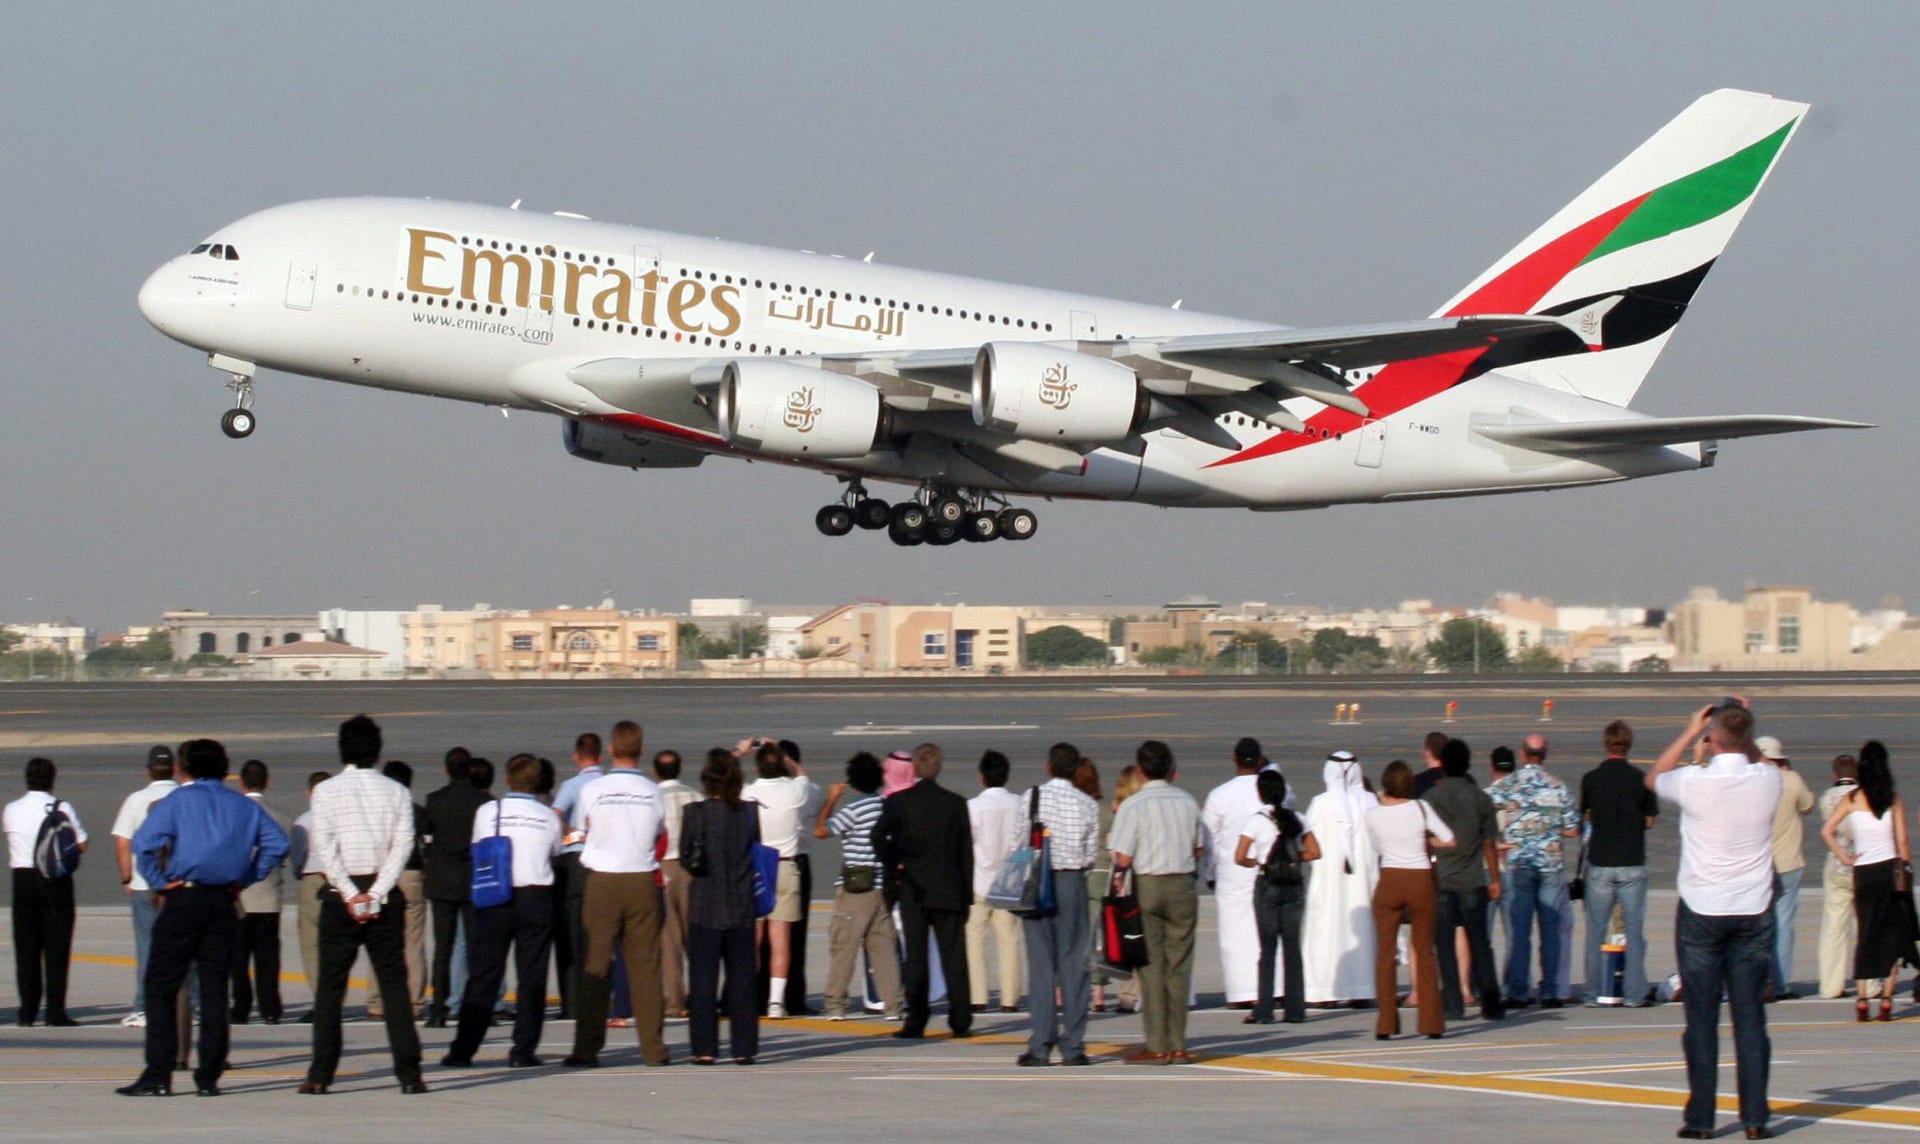 طيران الإمارات: رفع الحظر عن الأجهزة الإلكترونية برحلاتنا لأمريكا